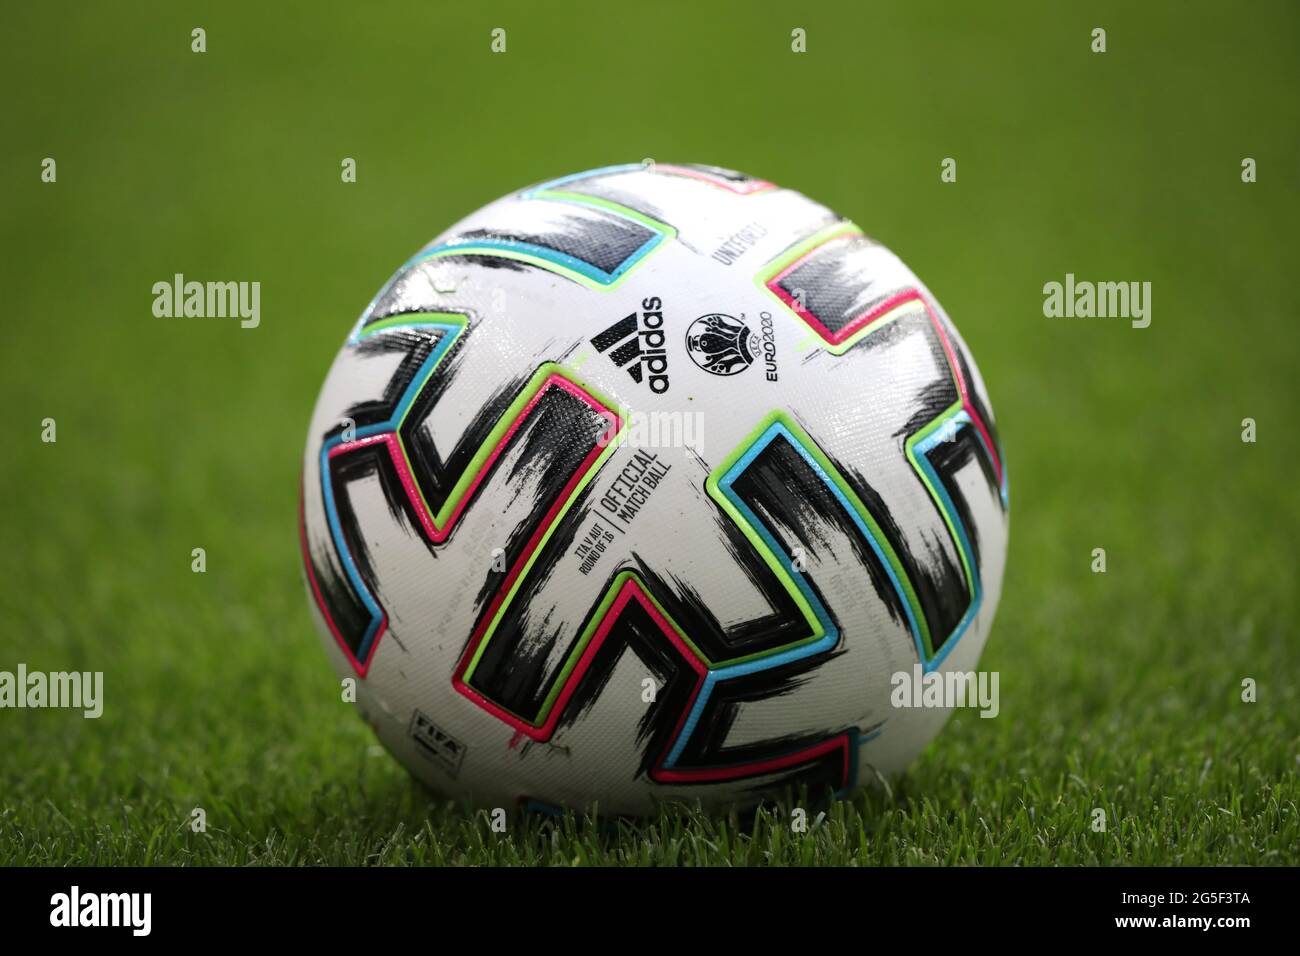 Londres, Royaume-Uni. 26 juin 2021. Le ballon officiel adidas lors du match  Italie/Autriche UEFA EURO 2020 Groupe C au stade Wembley, Londres,  Royaume-Uni, le 26 juin 2020. Crédit: Paul Marriott/Alay Live News